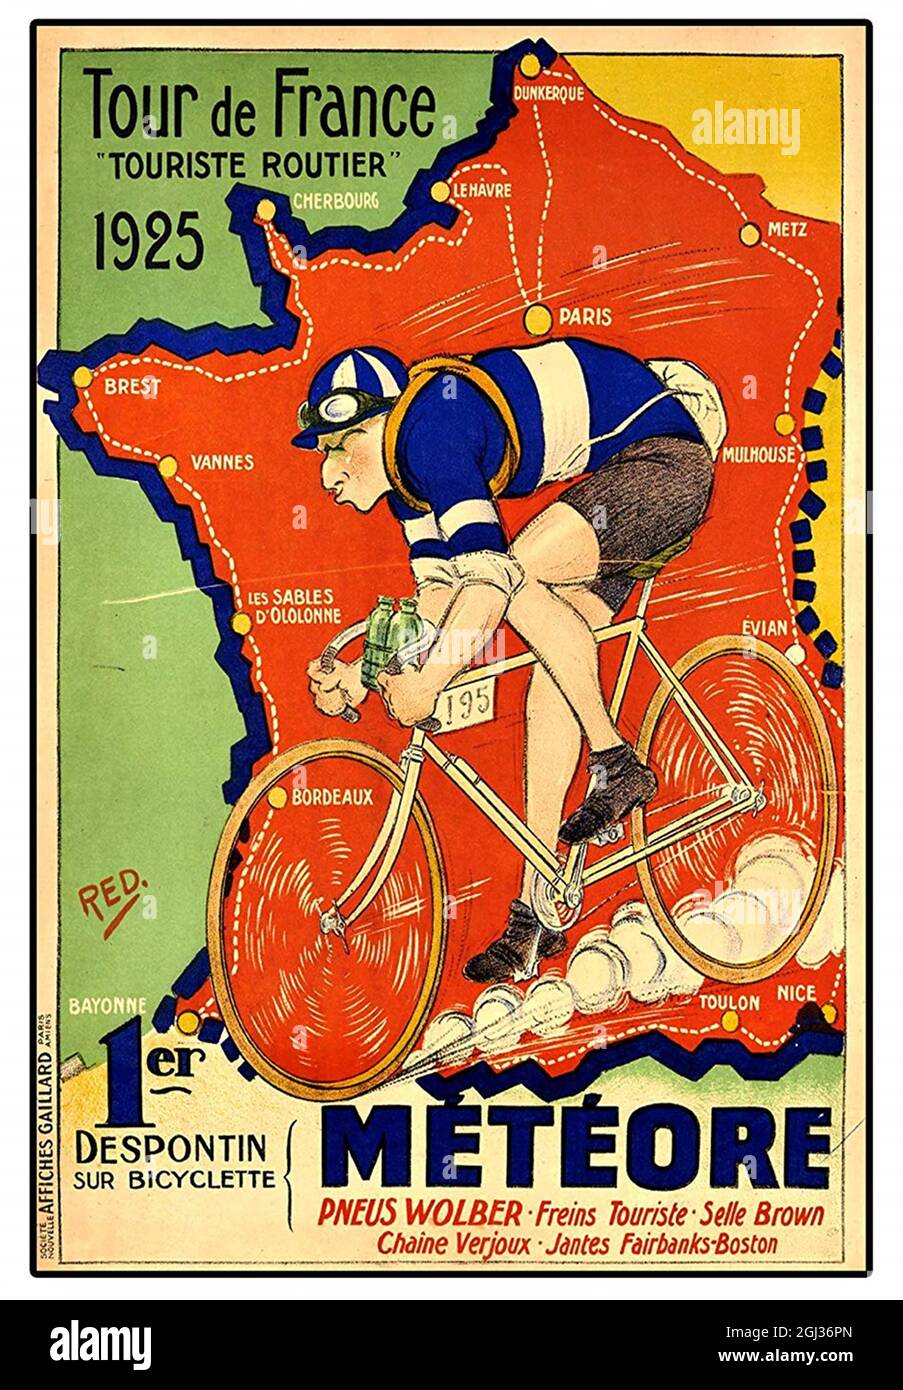 Fare clic sul poster della gara ciclistica francese d'epoca - Tour de France,  1925 Foto stock - Alamy